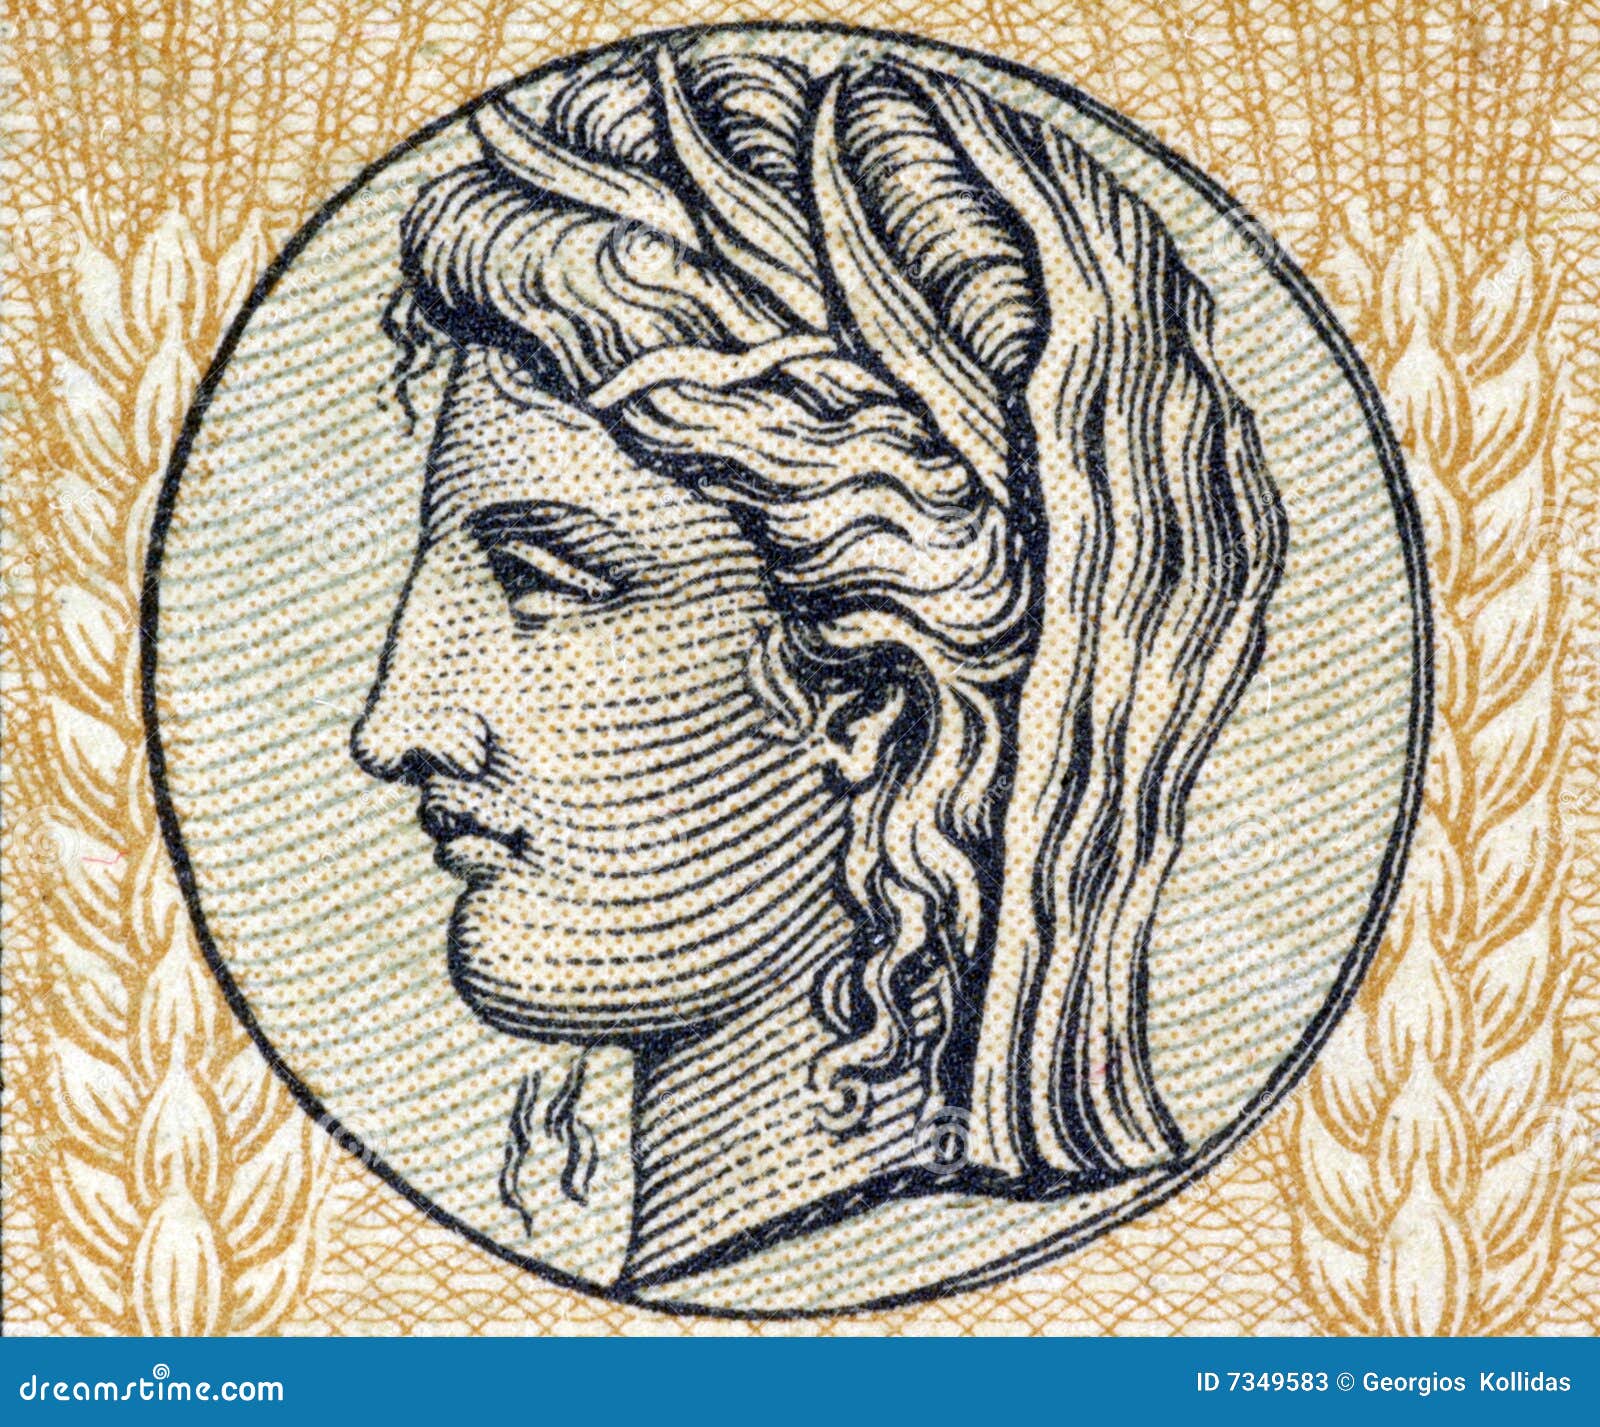 demeter, greek goddess of grain and fertility